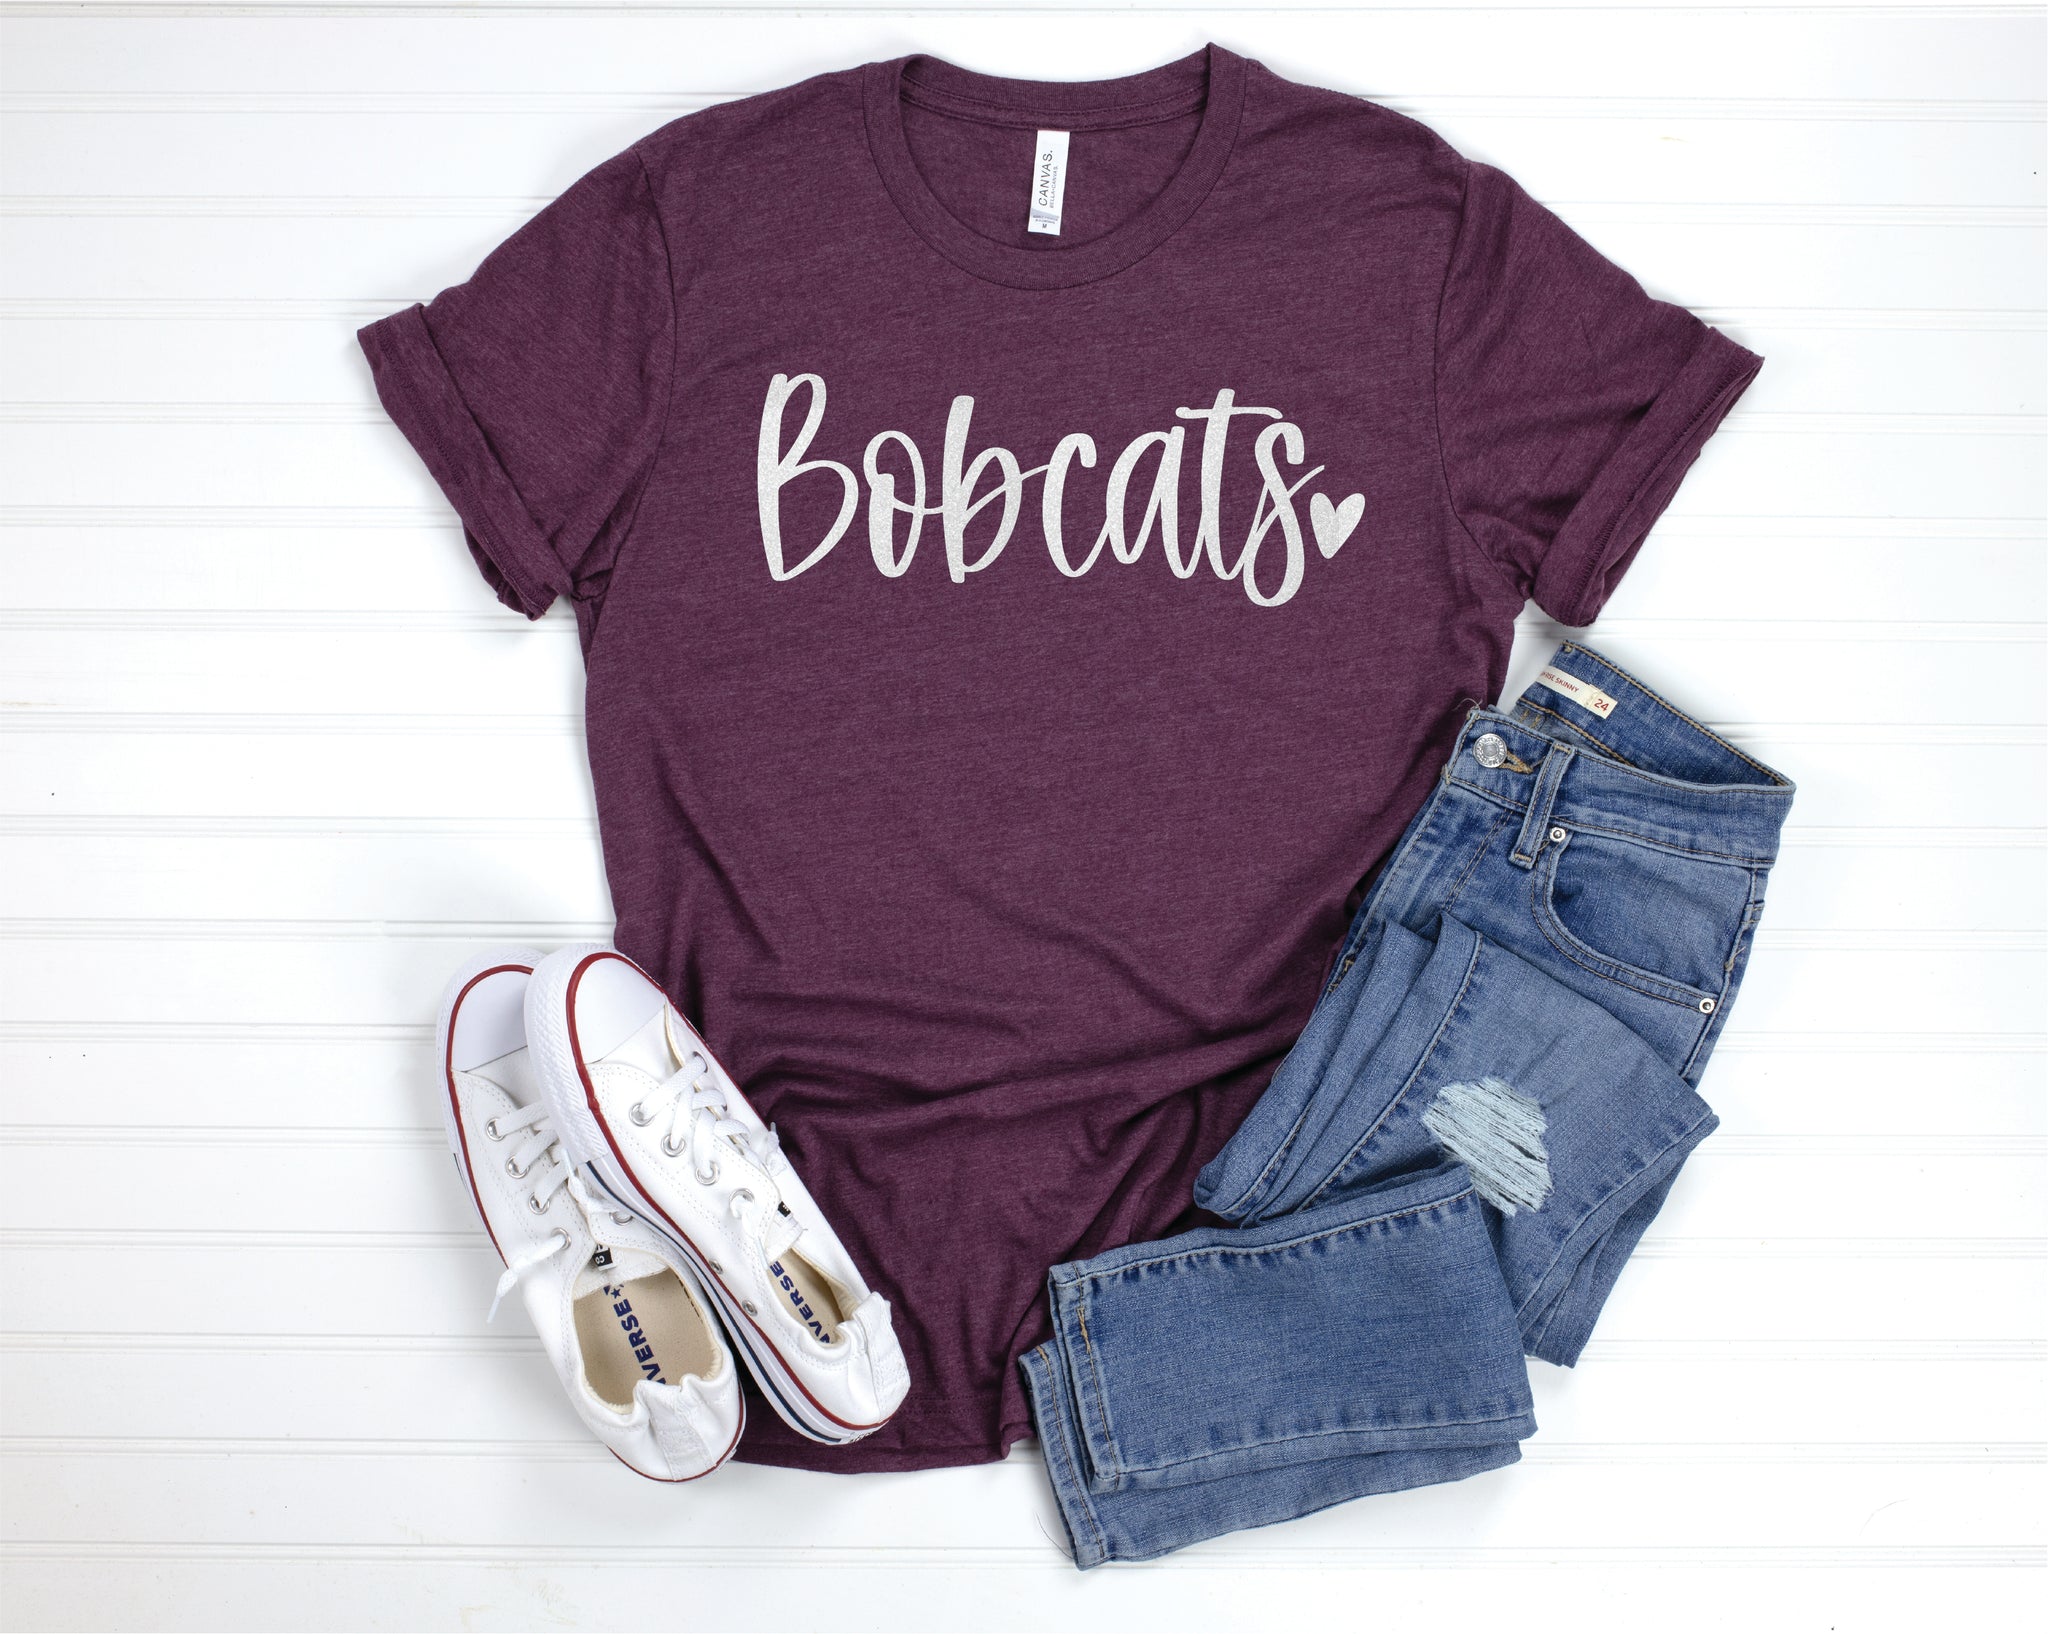 Bobcats - Heather Maroon